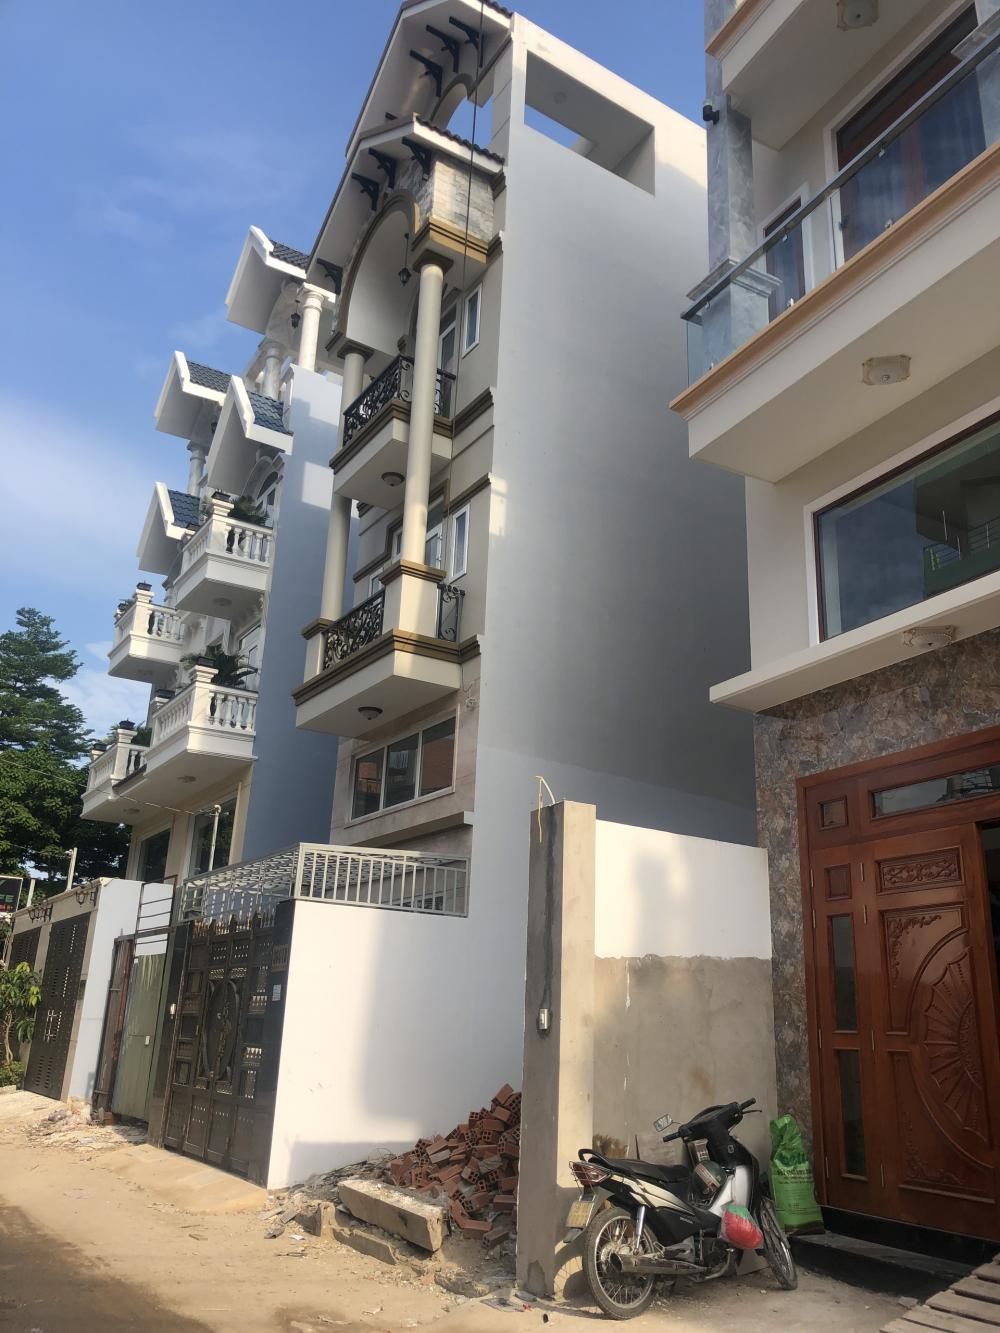  Bán nhà 2 mặt tiền đường 19 Dương Quảng Hàm .P.5 quận Gò Vấp 106,5 m2 giá 9,75 tỷ